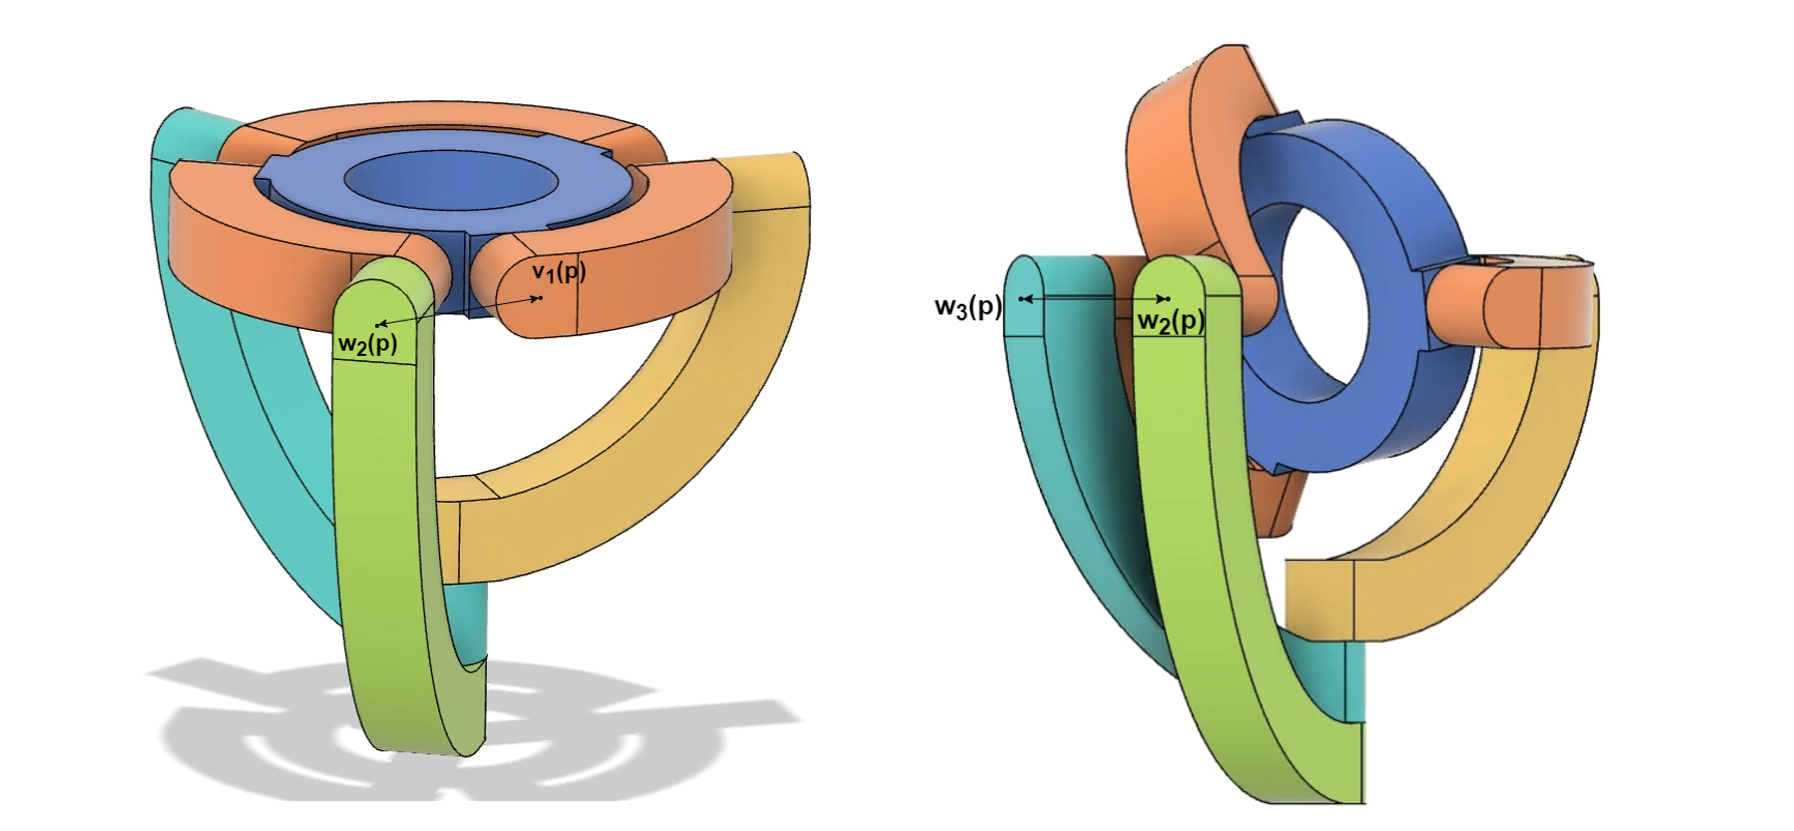 Коллизии параллельного сферического манипулятора при 1=0. Между нижним опорным плечом и верхним опорным плечом (слева) и между нижними опорными плечами (справа)